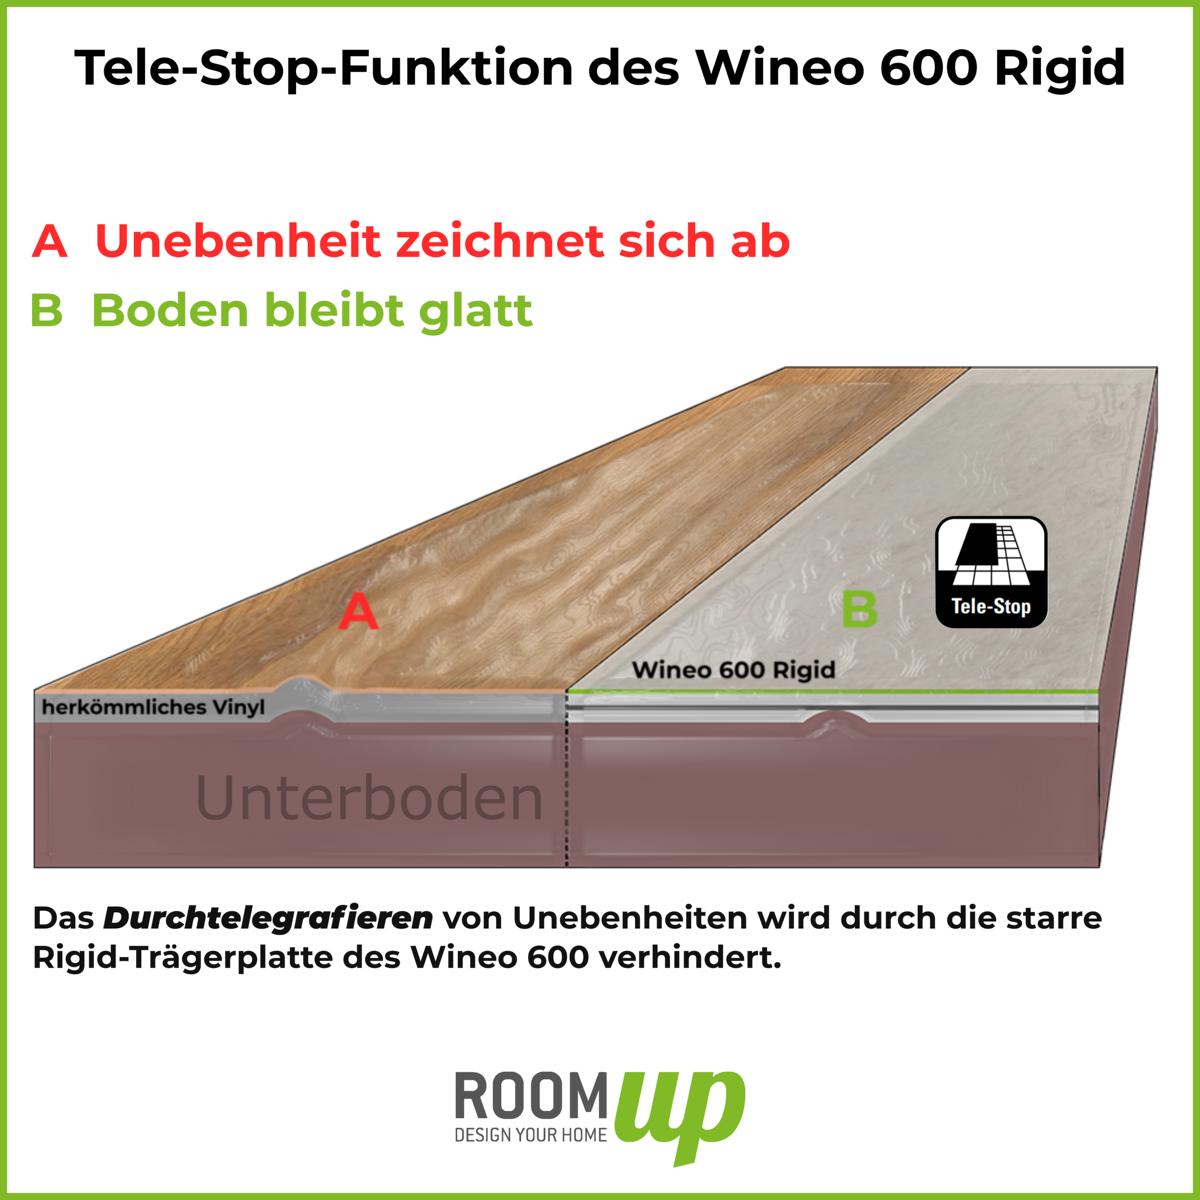 Wineo 600 Rigid - Tele-Stop